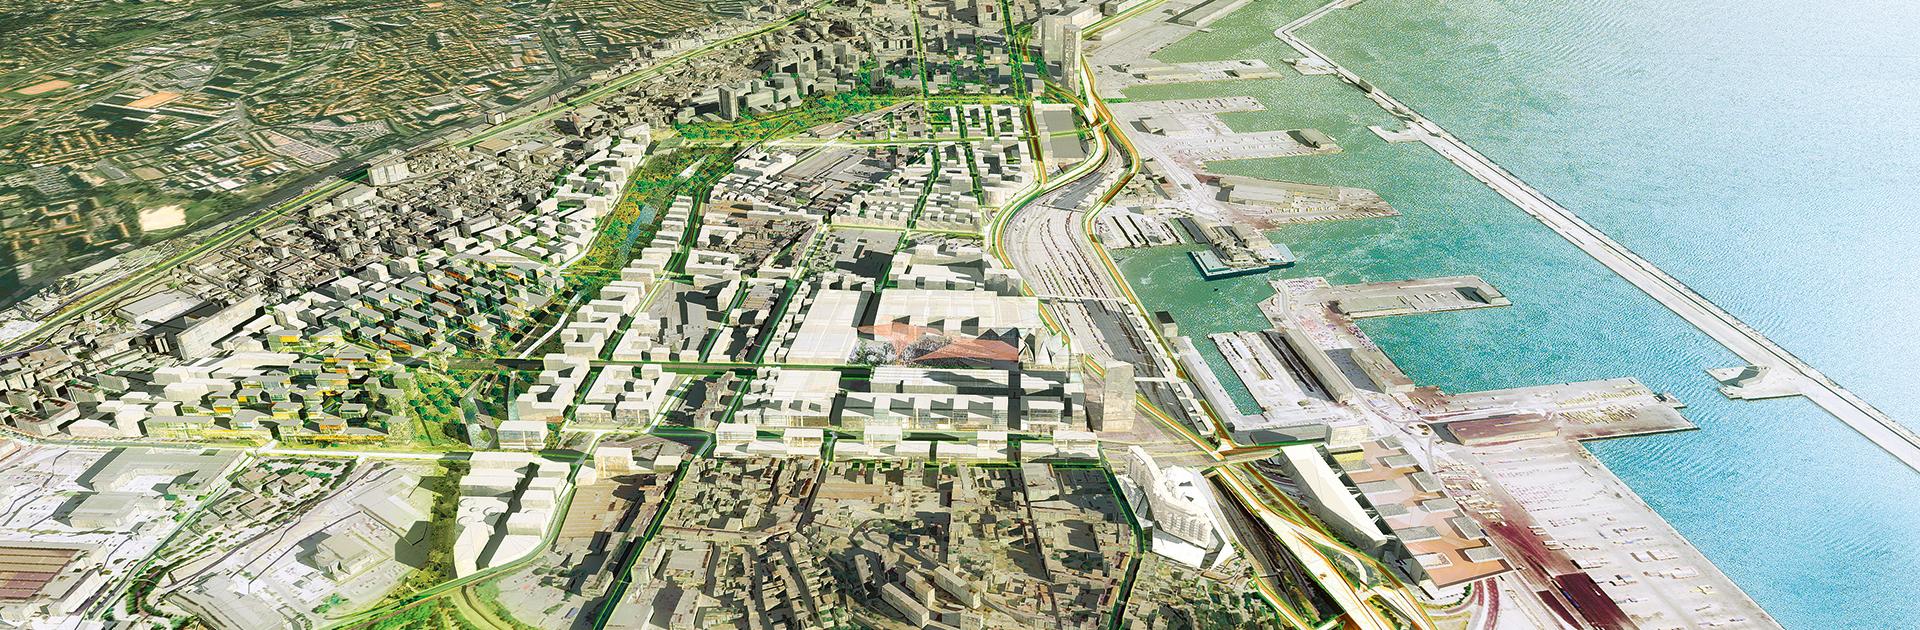 Zone Euroméditerranée II, opération de rénovation urbaine menée avec le BRGM près du Vieux-Port de Marseille